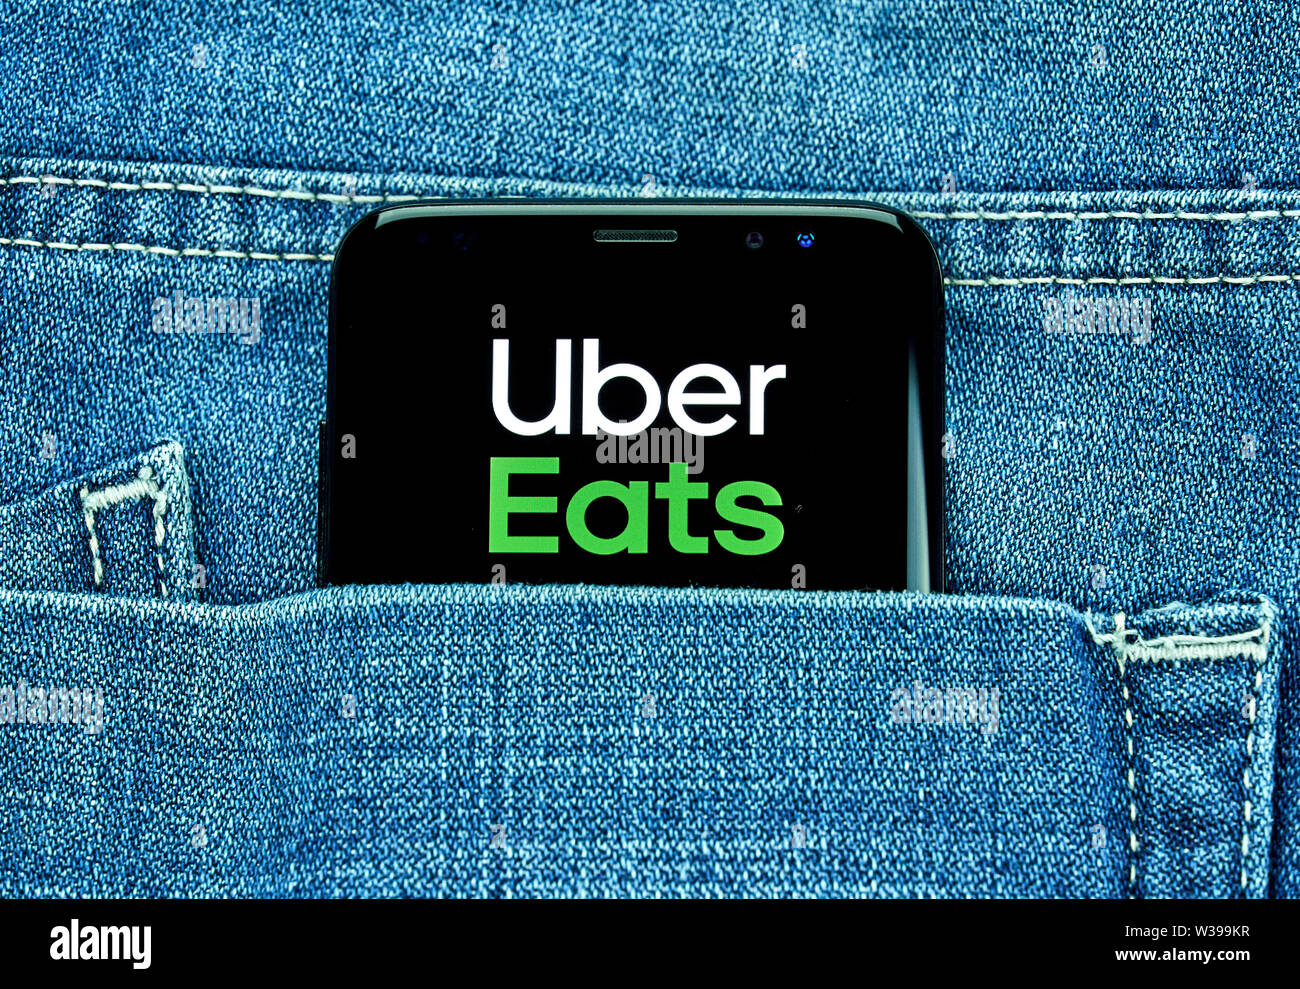 MONTREAL, KANADA - Dezember 23, 2018: Ubear isst android app auf Samsung S8-Bildschirm. Uber isst ist eine amerikanische online Bestellung und Lieferung Plattform Stockfoto